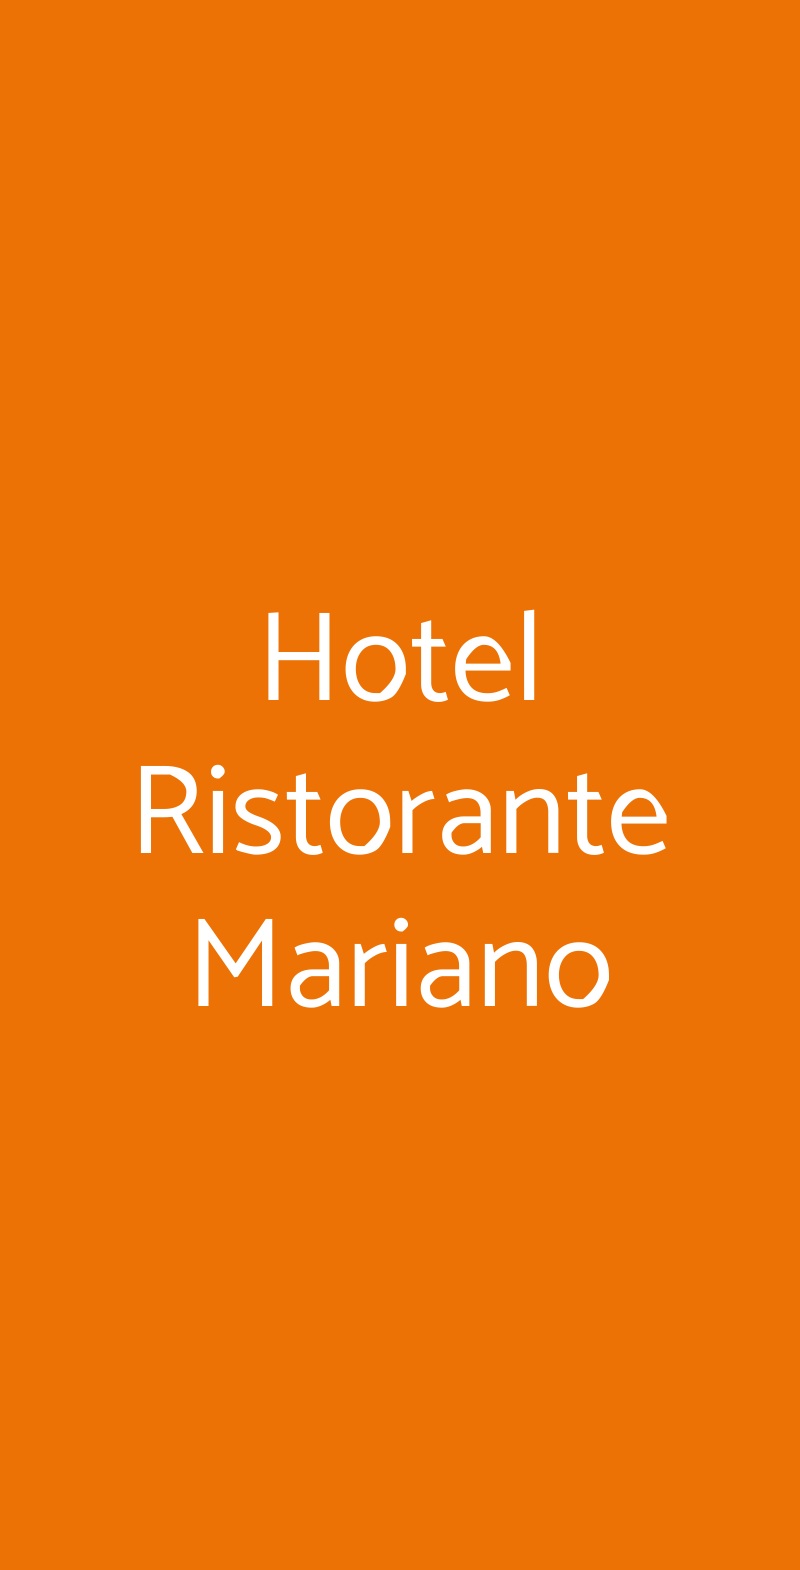 Hotel Ristorante Mariano Stigliano menù 1 pagina